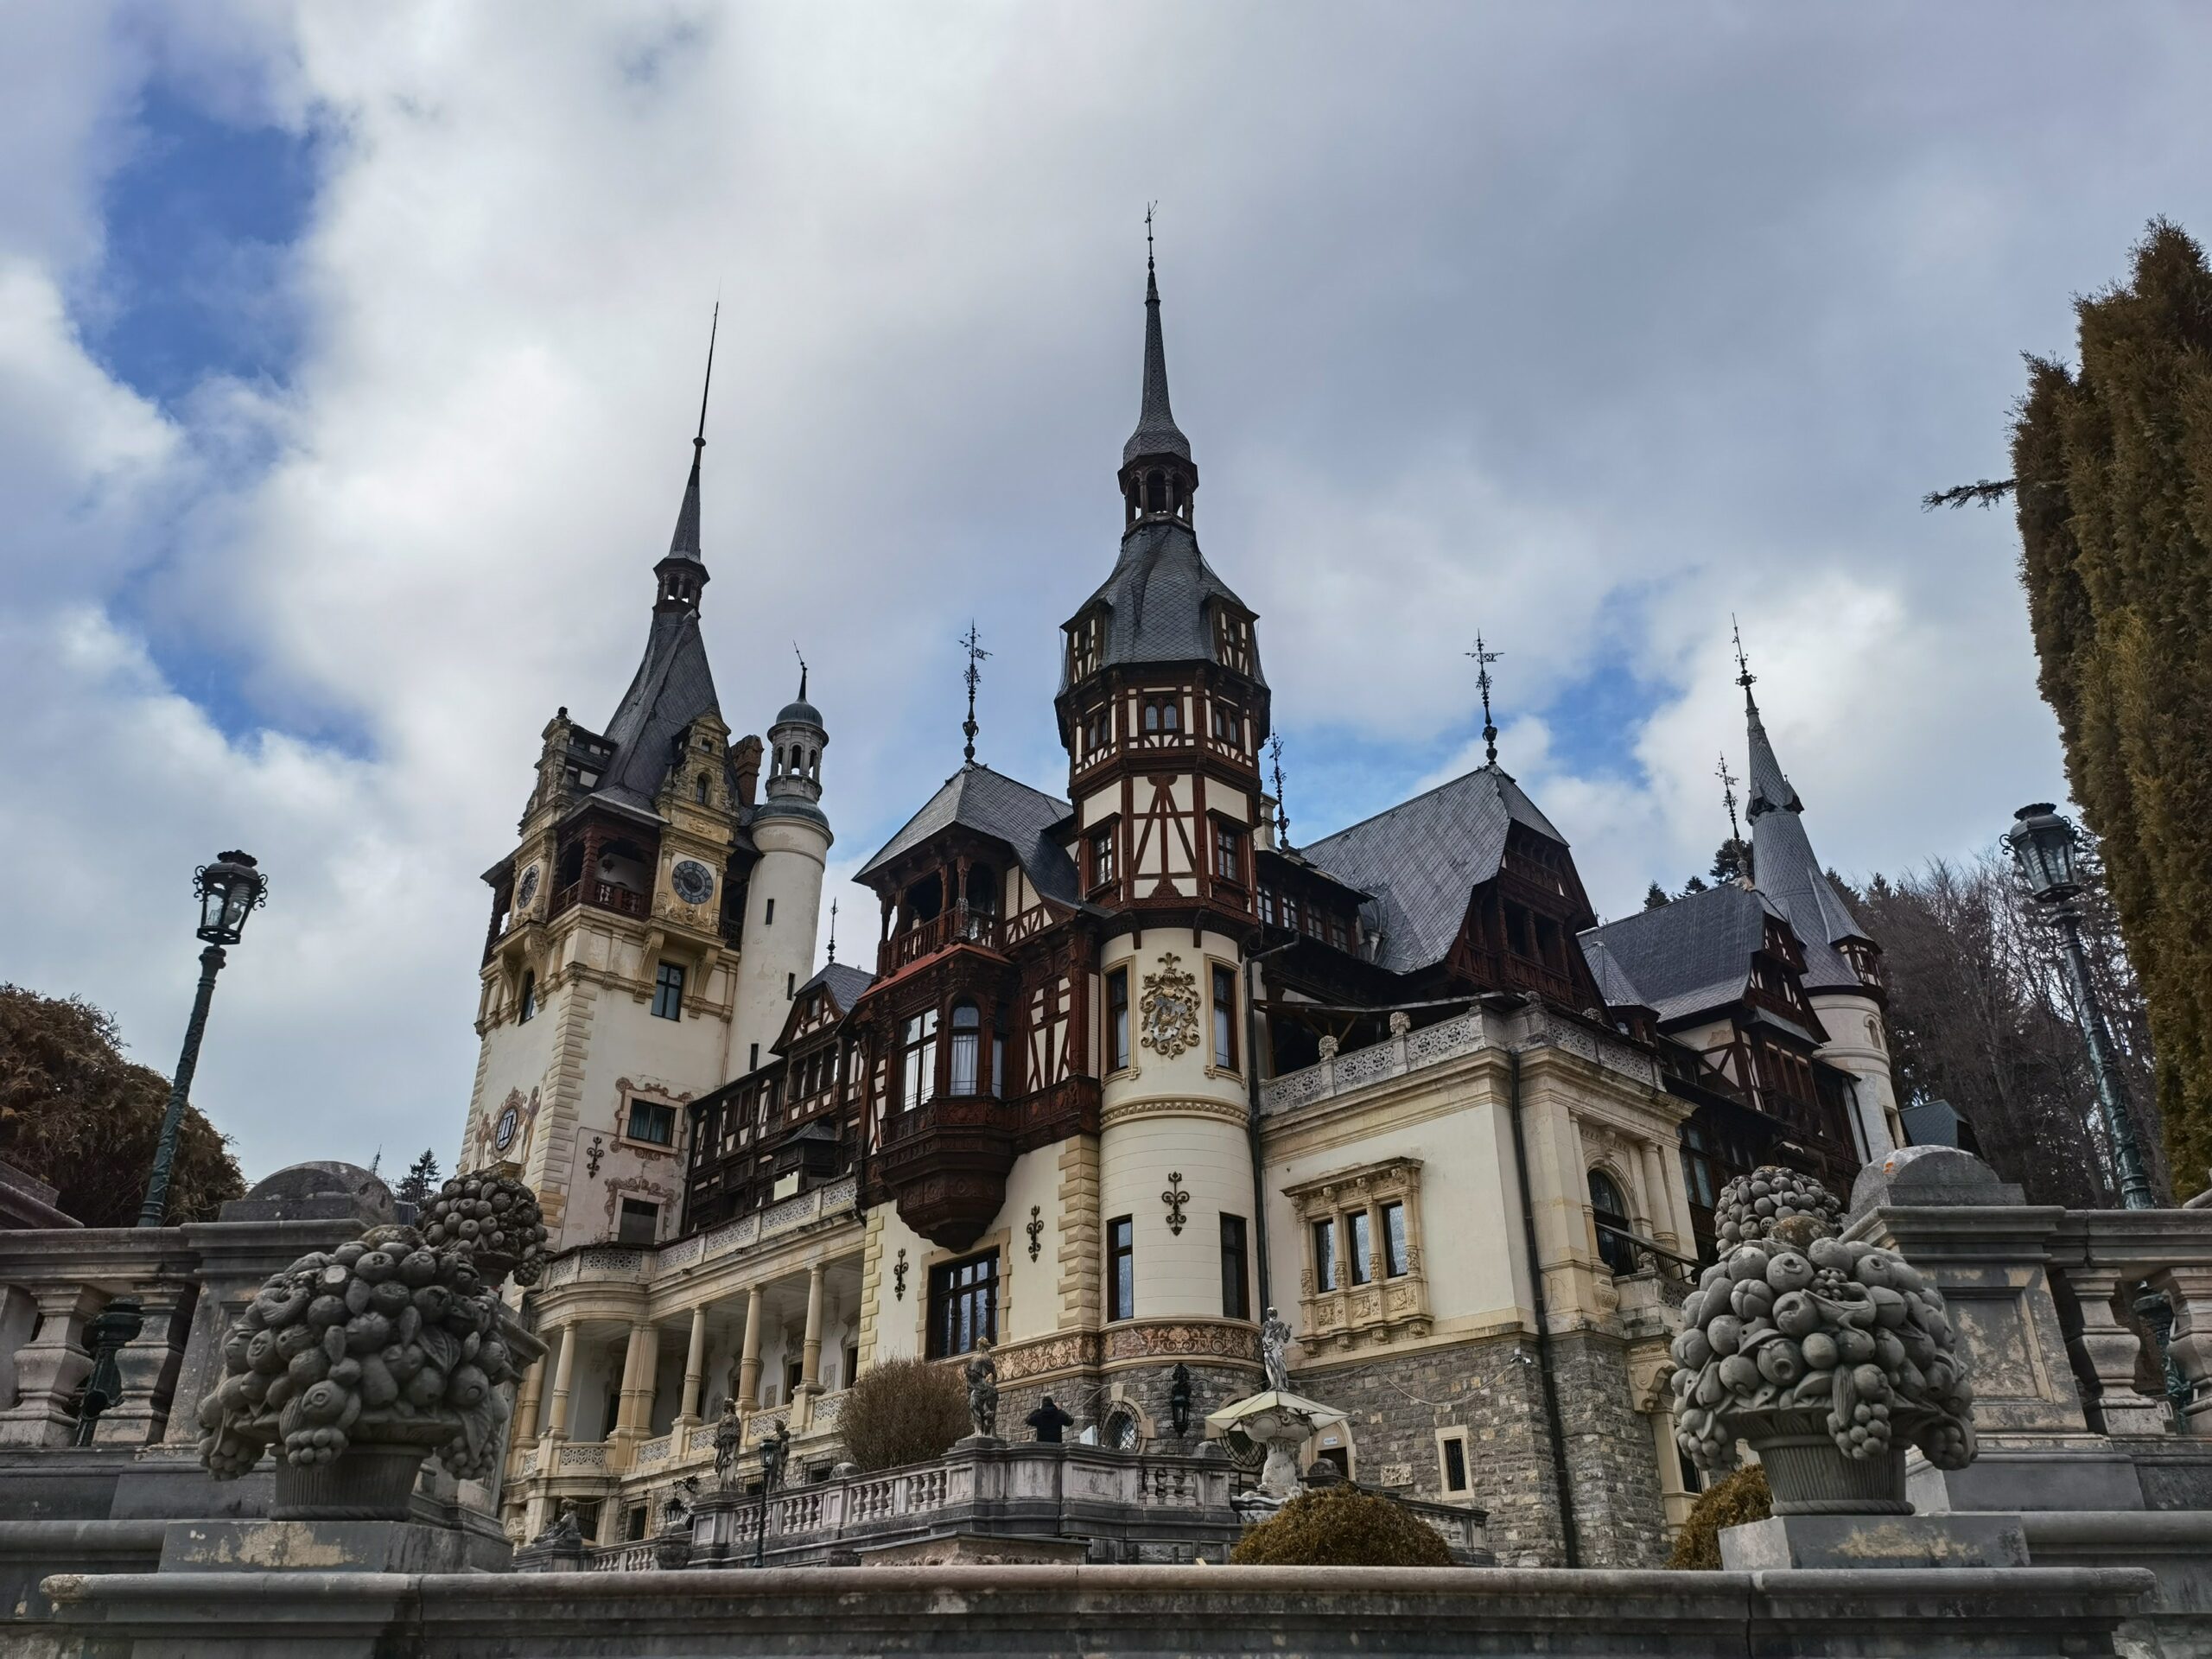 Peleş castle in Romania